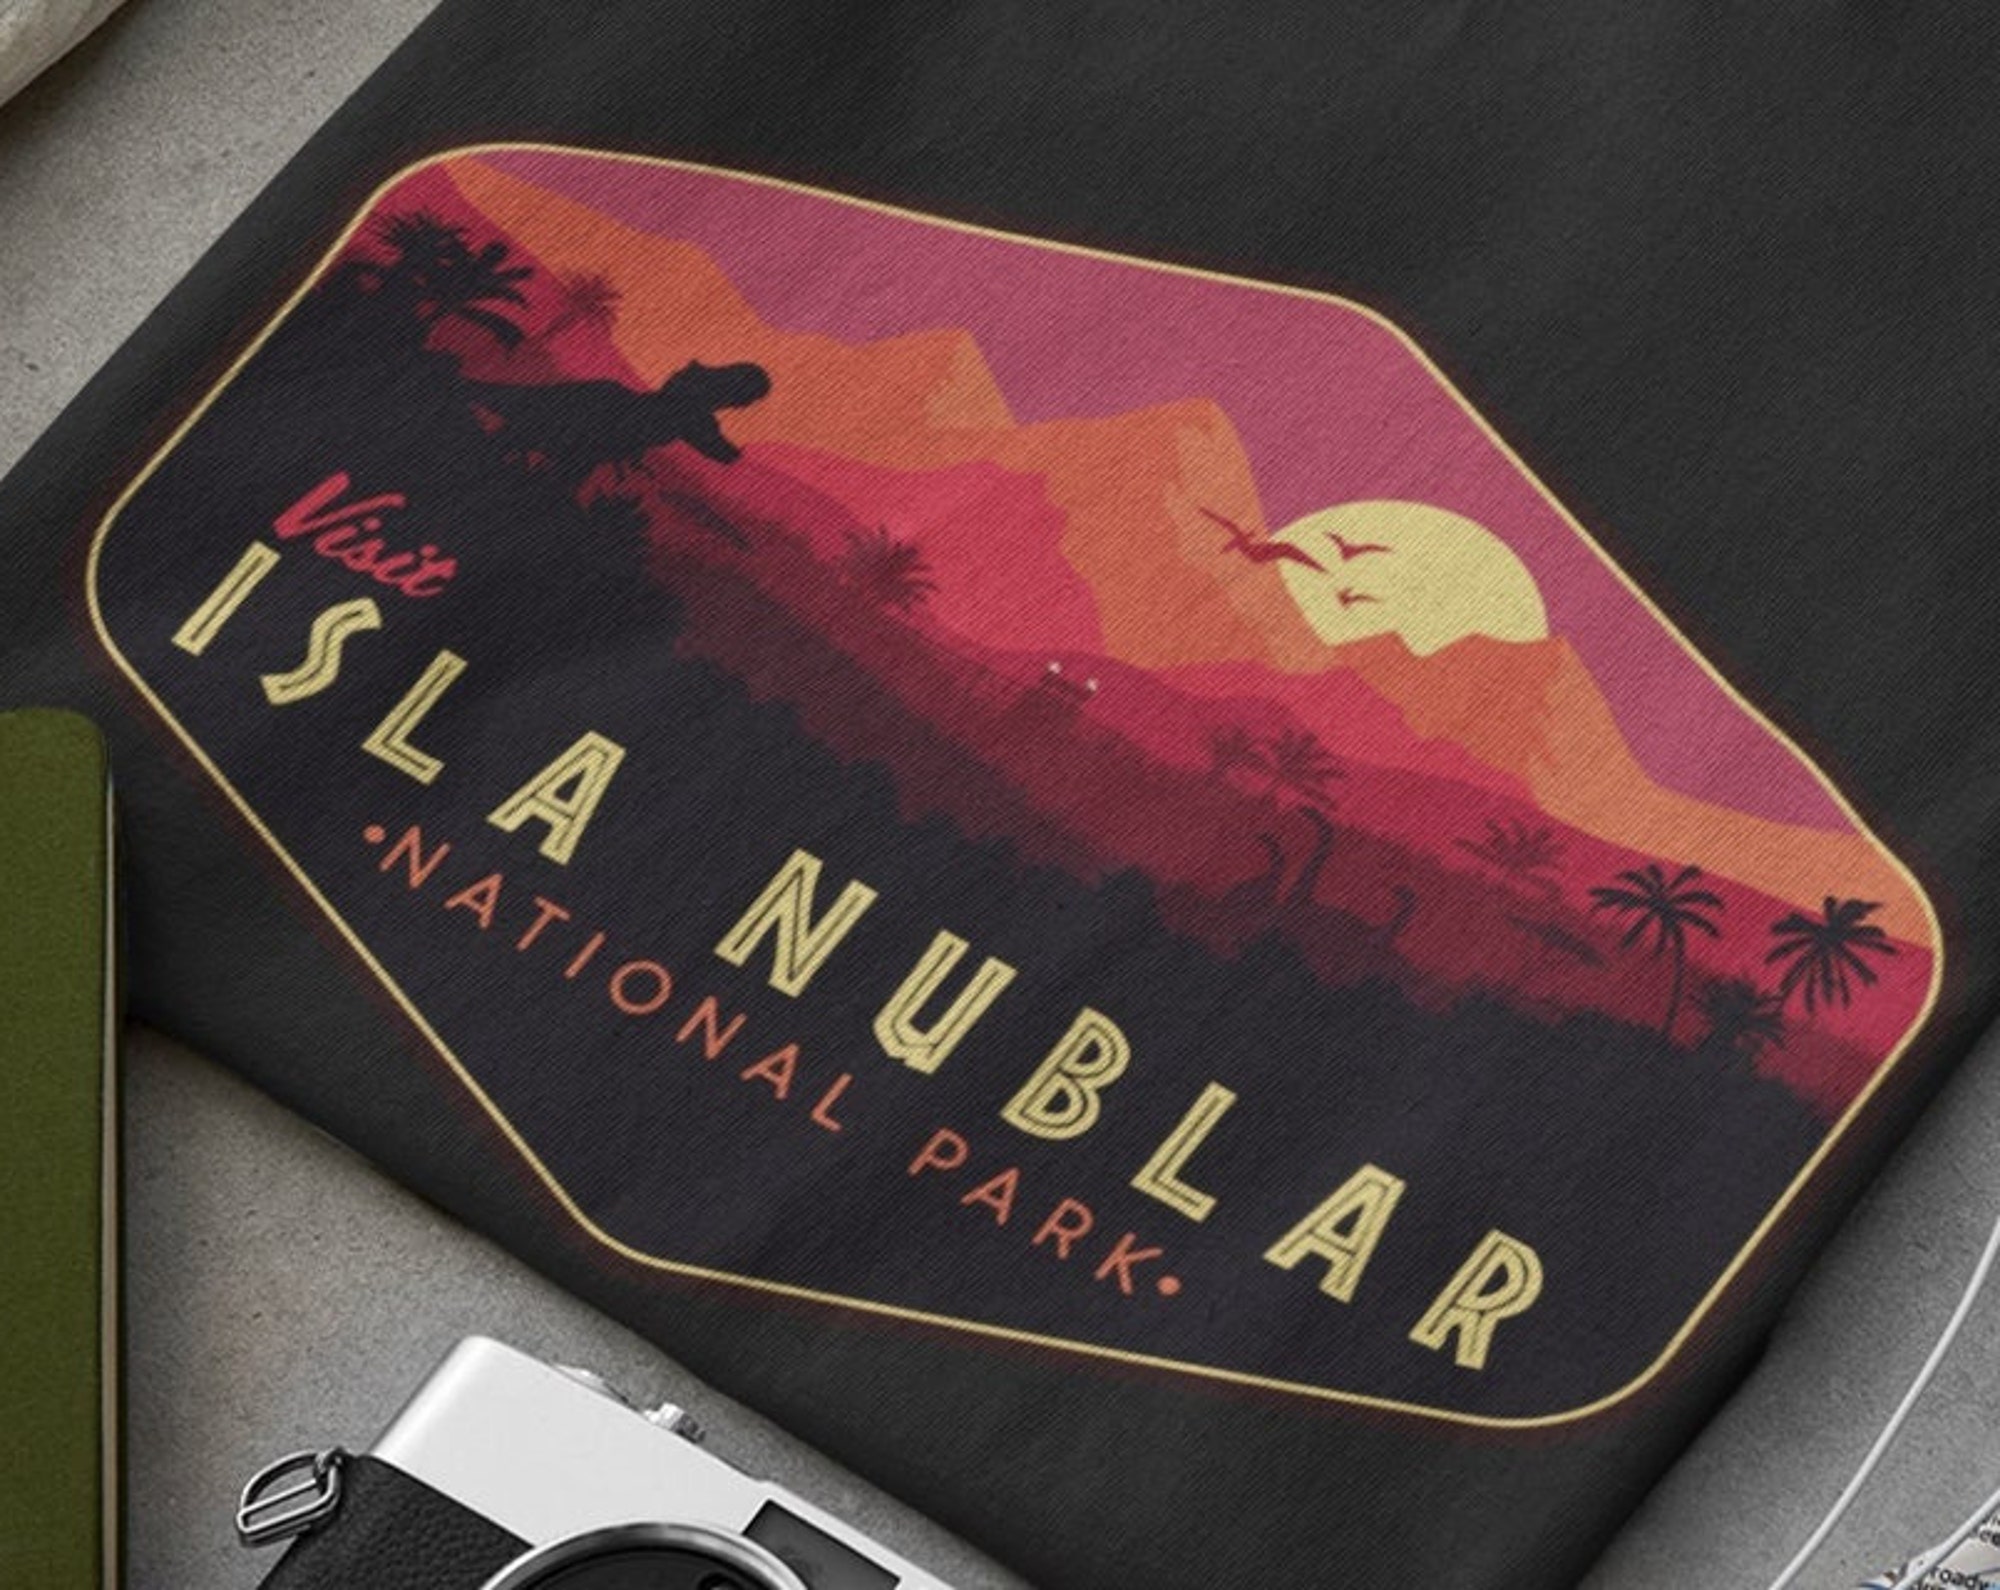 Jurassic Park T-Shirt, Isla Nublar Shirt, Jurassic World Parody Shirt, Visit Isla Nublar National Park